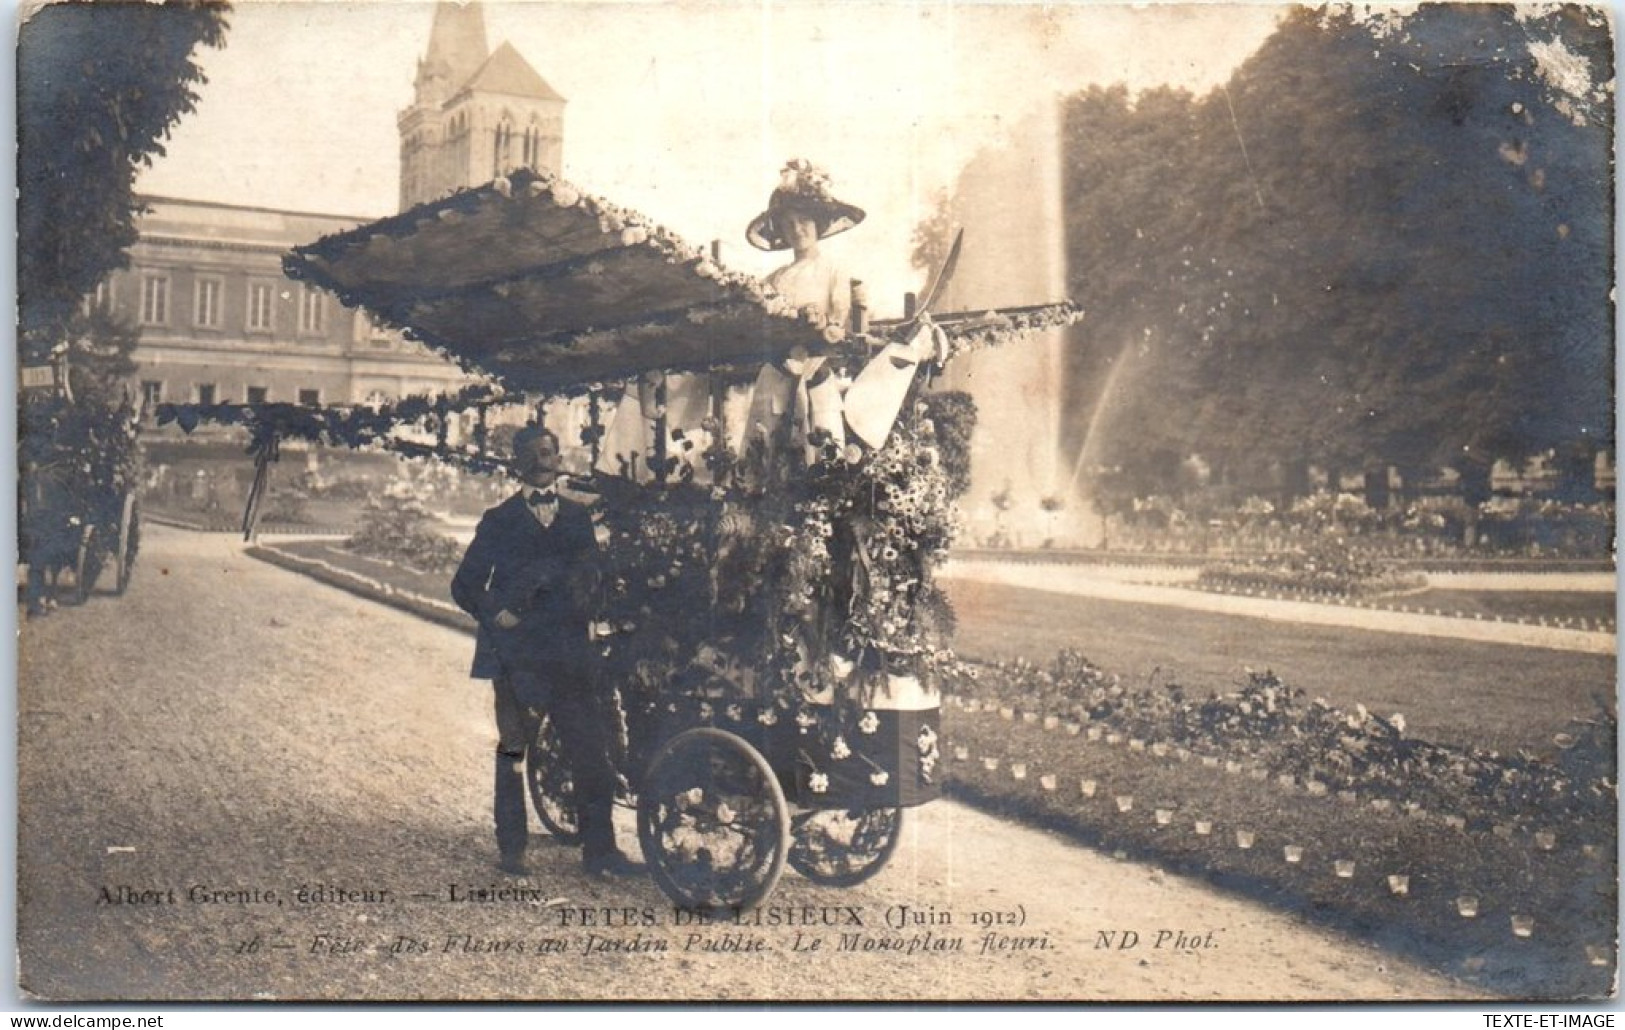 14 LISIEUX - Petit Char Lors Des Fetes De Juin 1912 - Lisieux